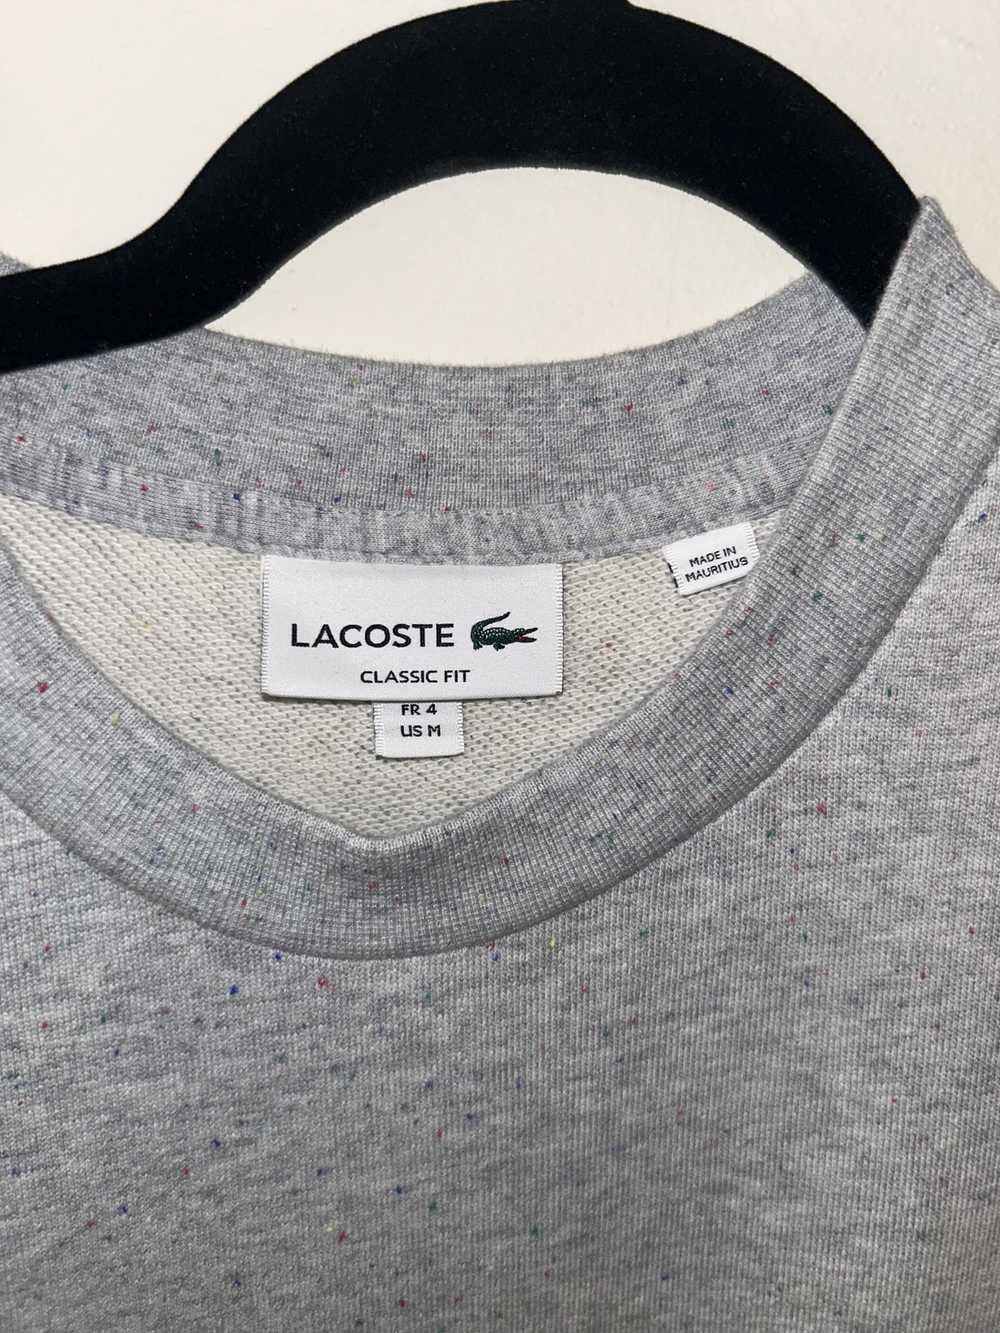 Lacoste Men's Classic Fit Speckled Print Fleece S… - image 2